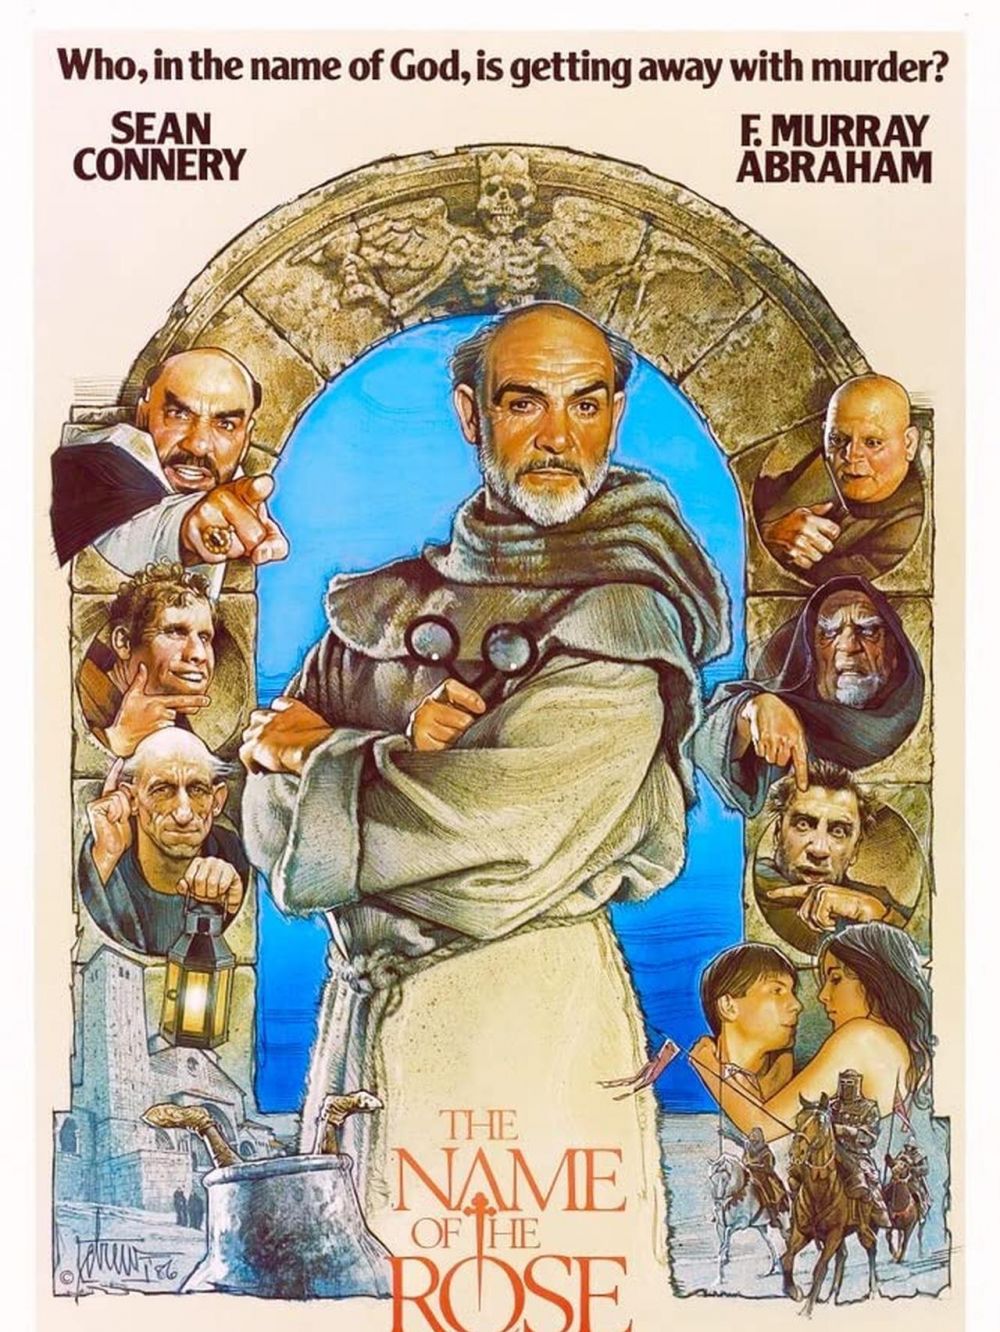 Sean Connery meninggal, ini 6 film terbaik yang dibintanginya